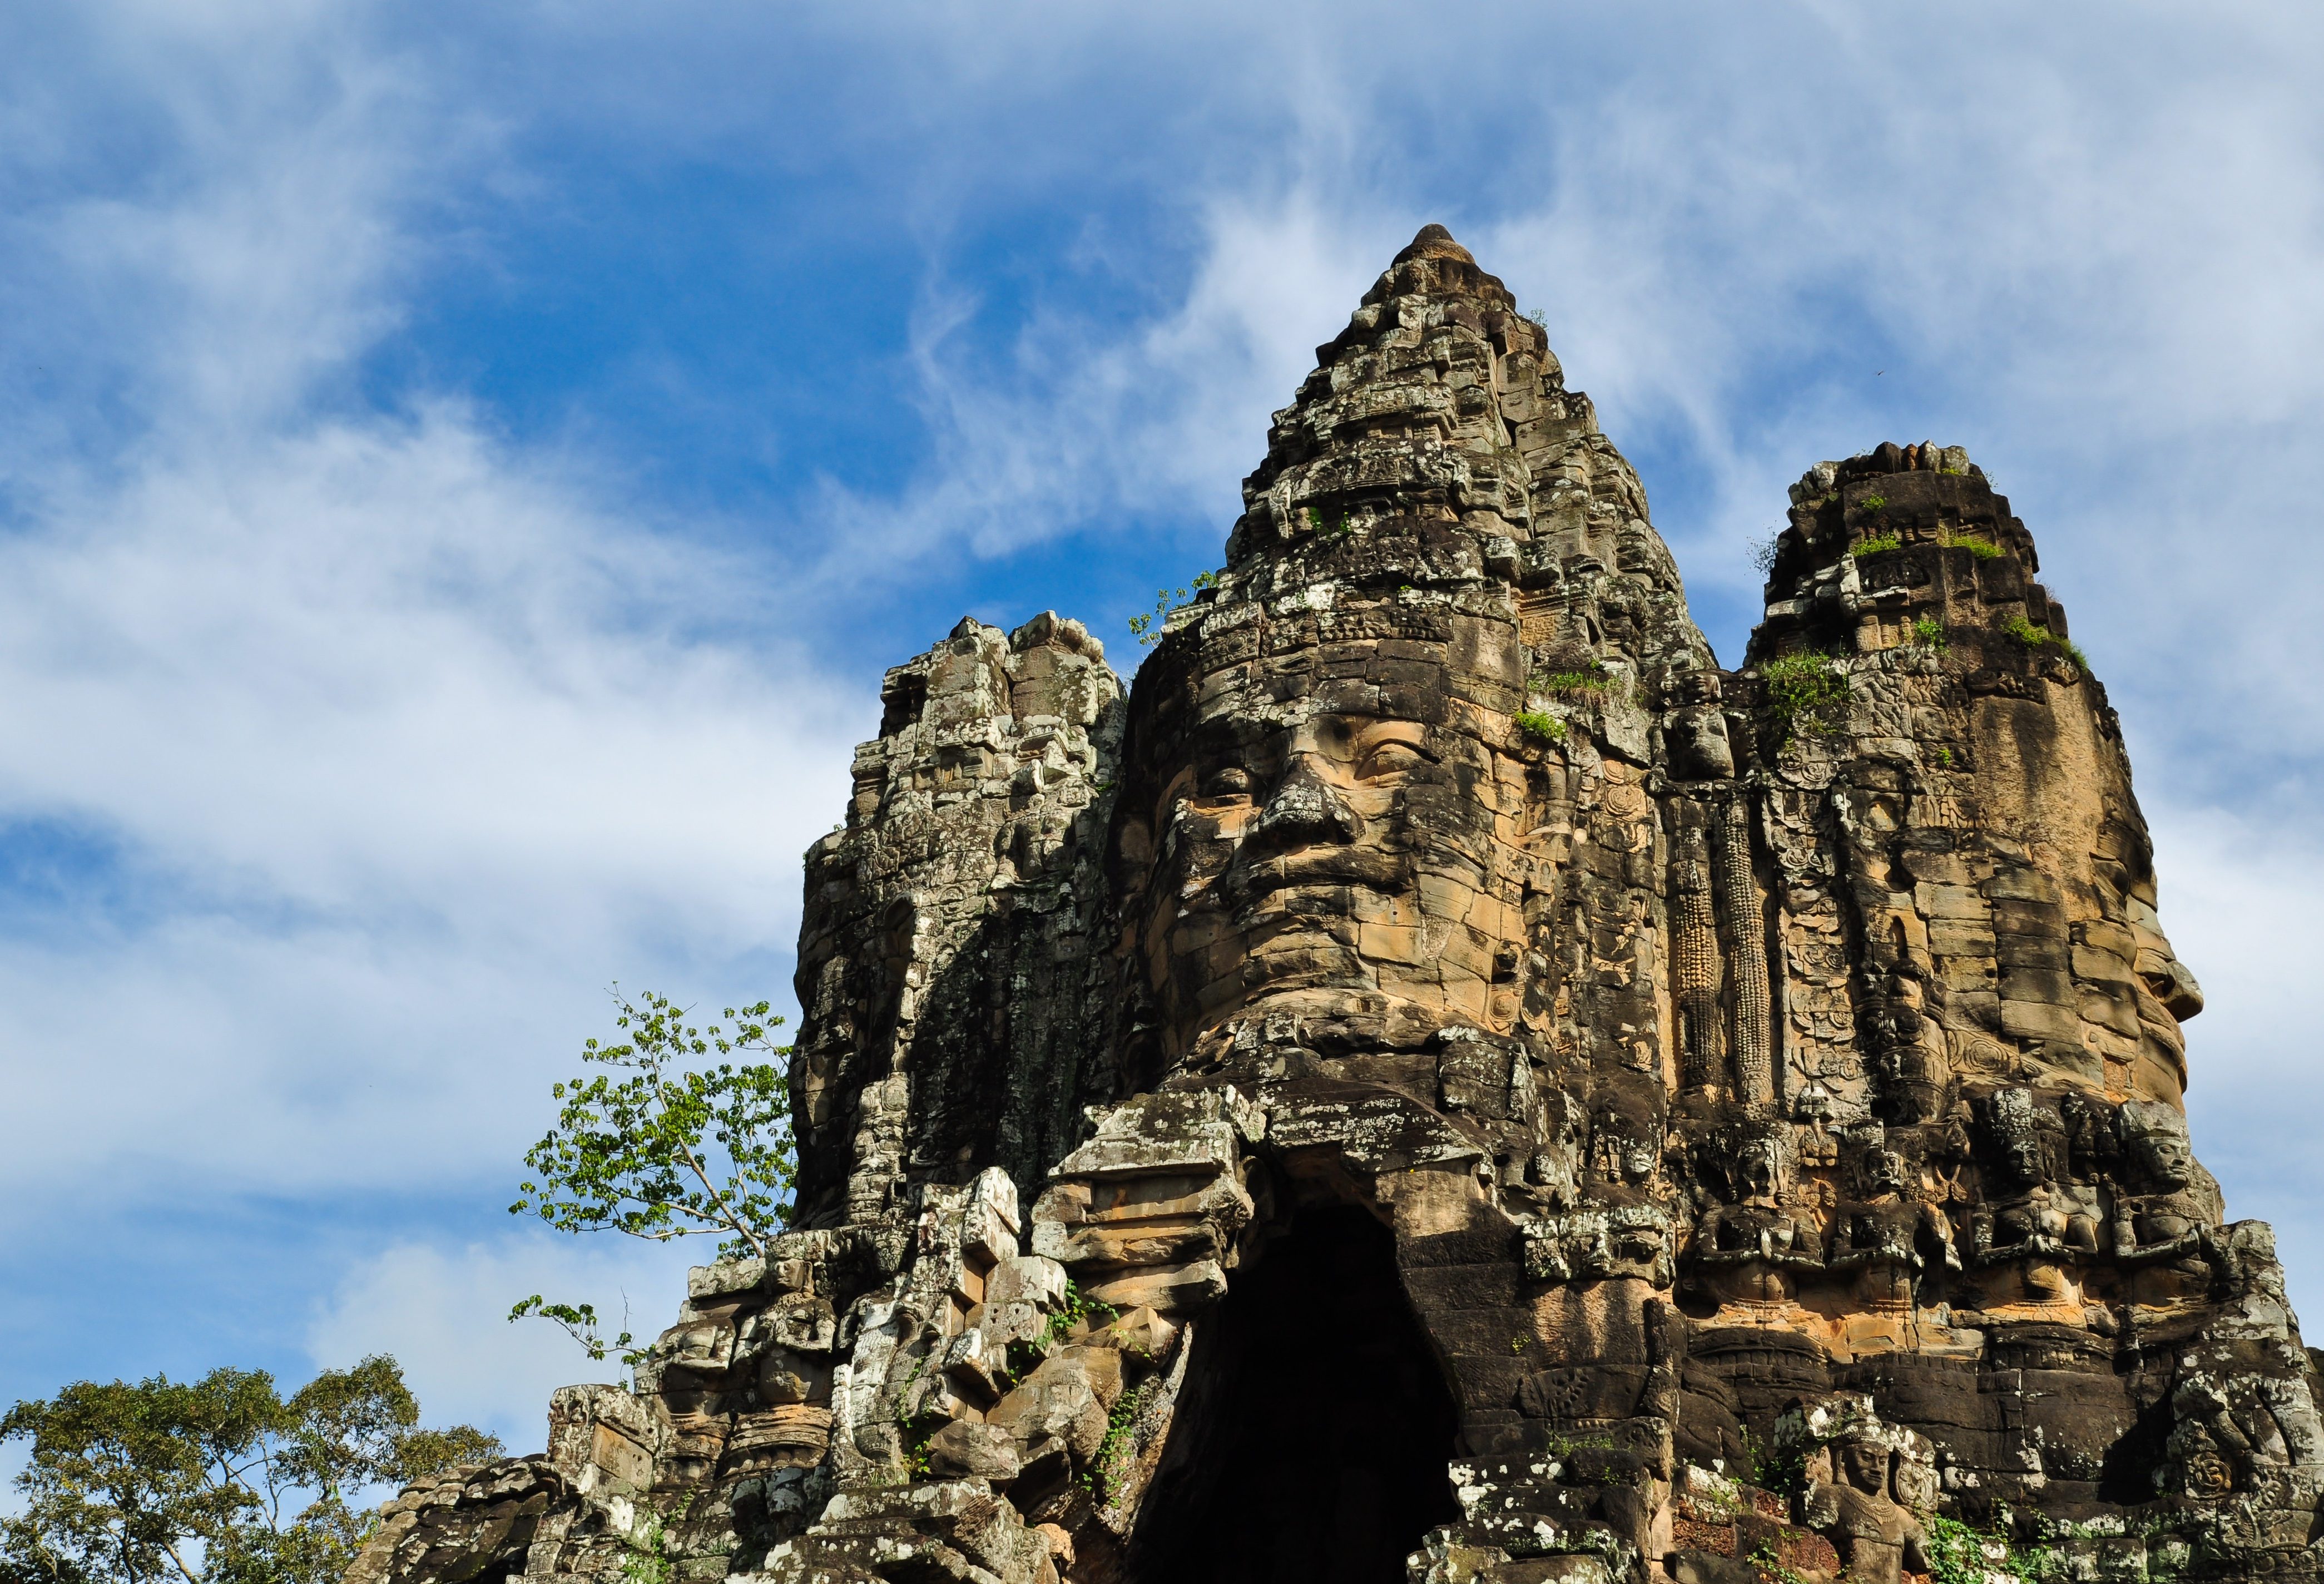 Bayon tempel in het Angkor tempelcomplex in Cambodja